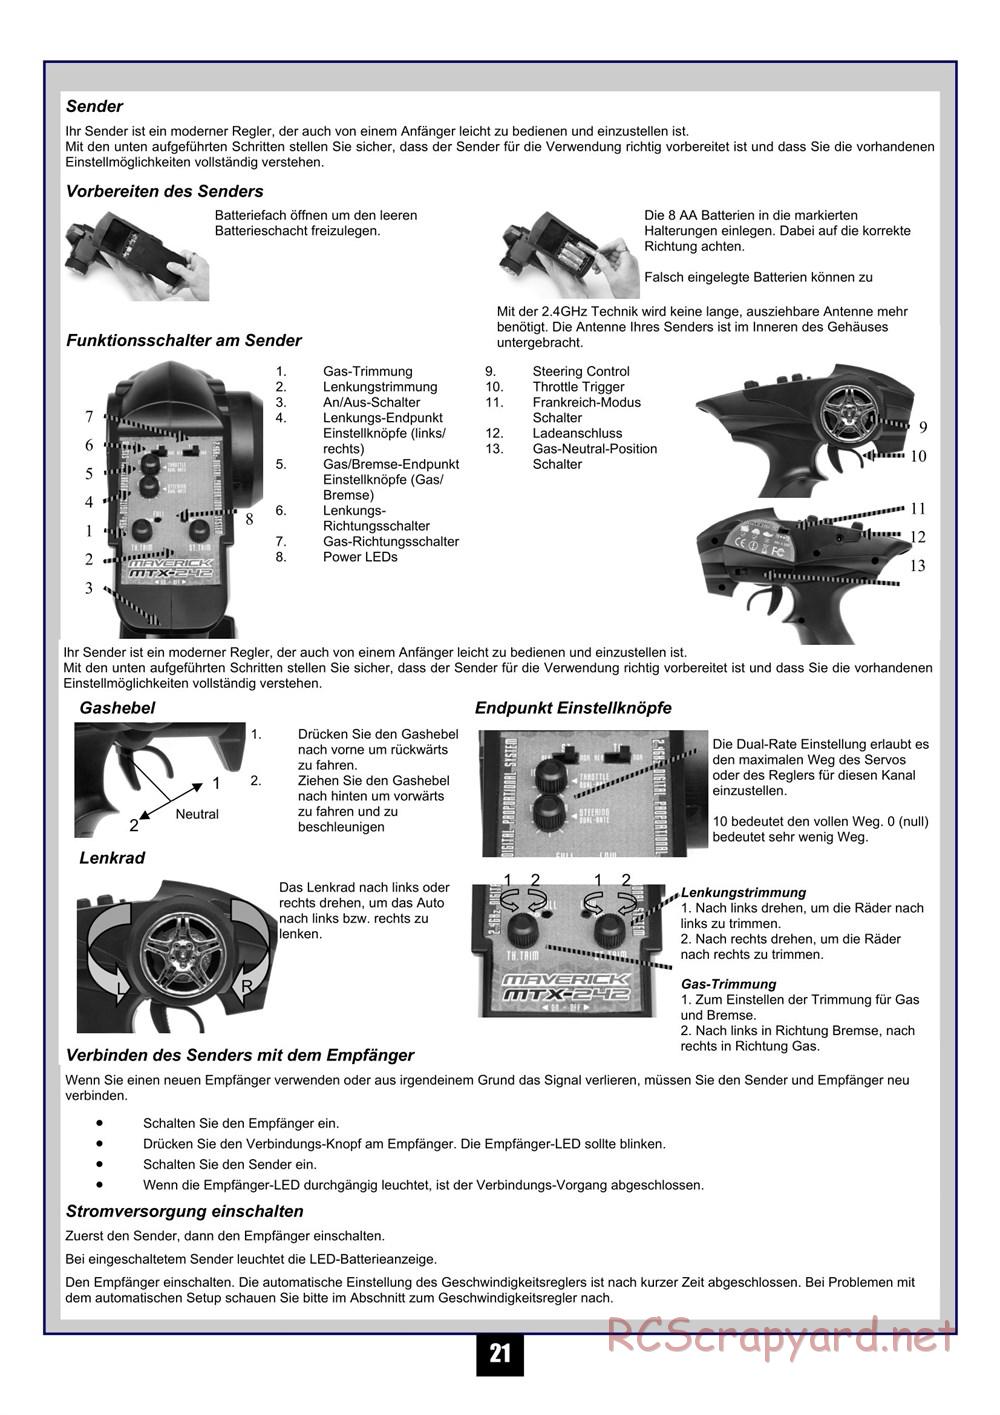 HPI - Maverick Blackout MT - Manual - Page 22